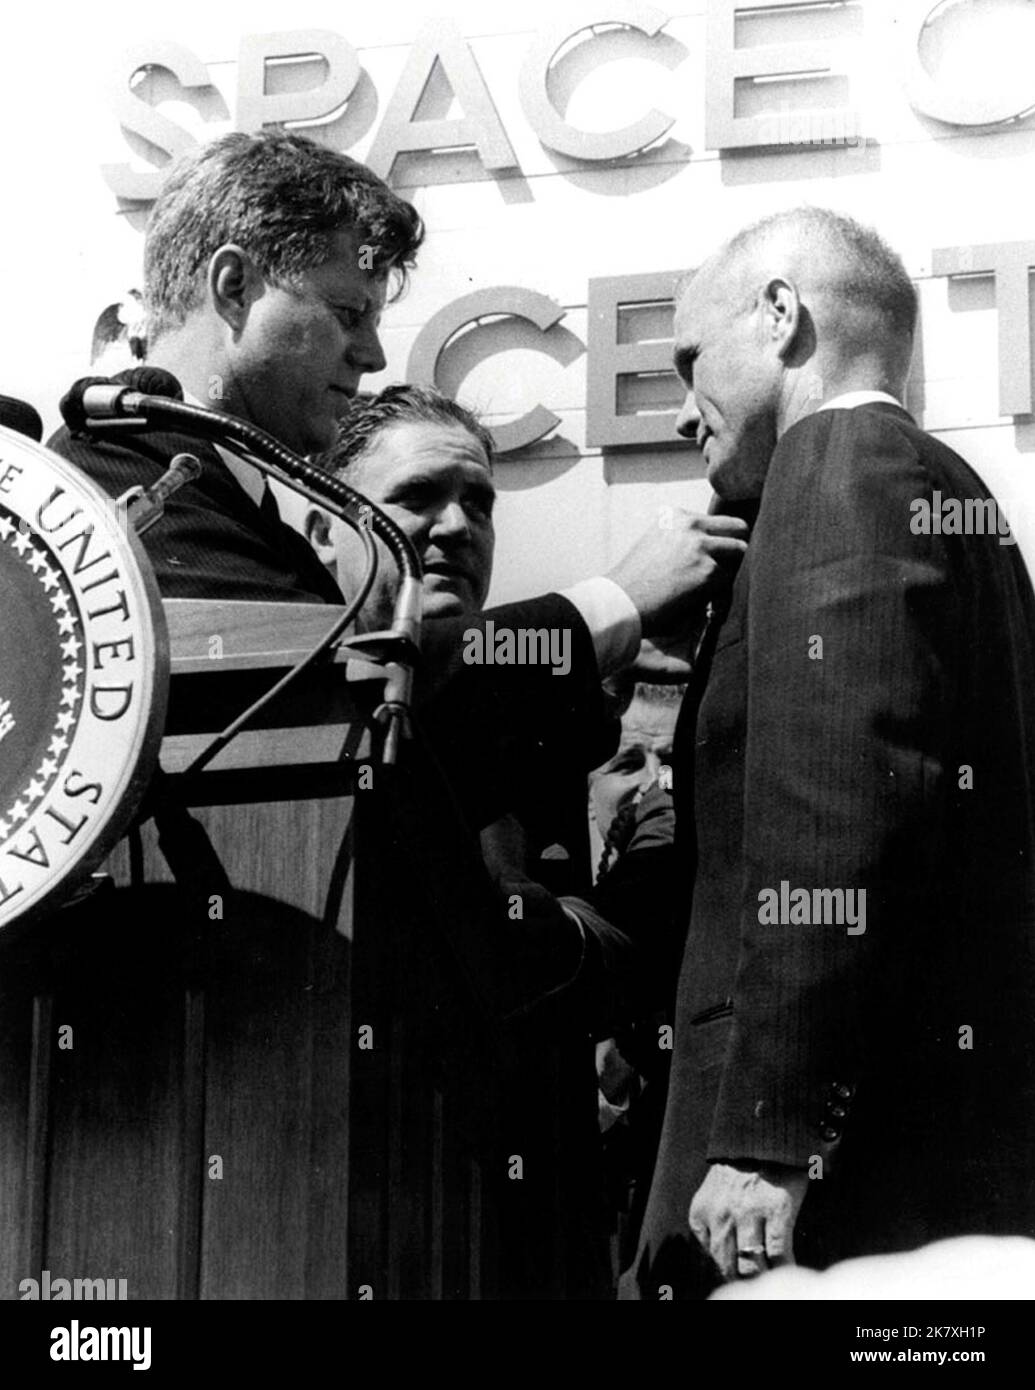 Präsident John F. Kennedy stiftet nach seinem historischen drei-Orbit-Flug, Mercury-Atlas 6, eine NASA Distinguished Service Medal auf den Astronauten John Glenn Jr. Die Zeremonie fand vor dem Hangar S in der Cape Canaveral Air Force Station statt. Stockfoto